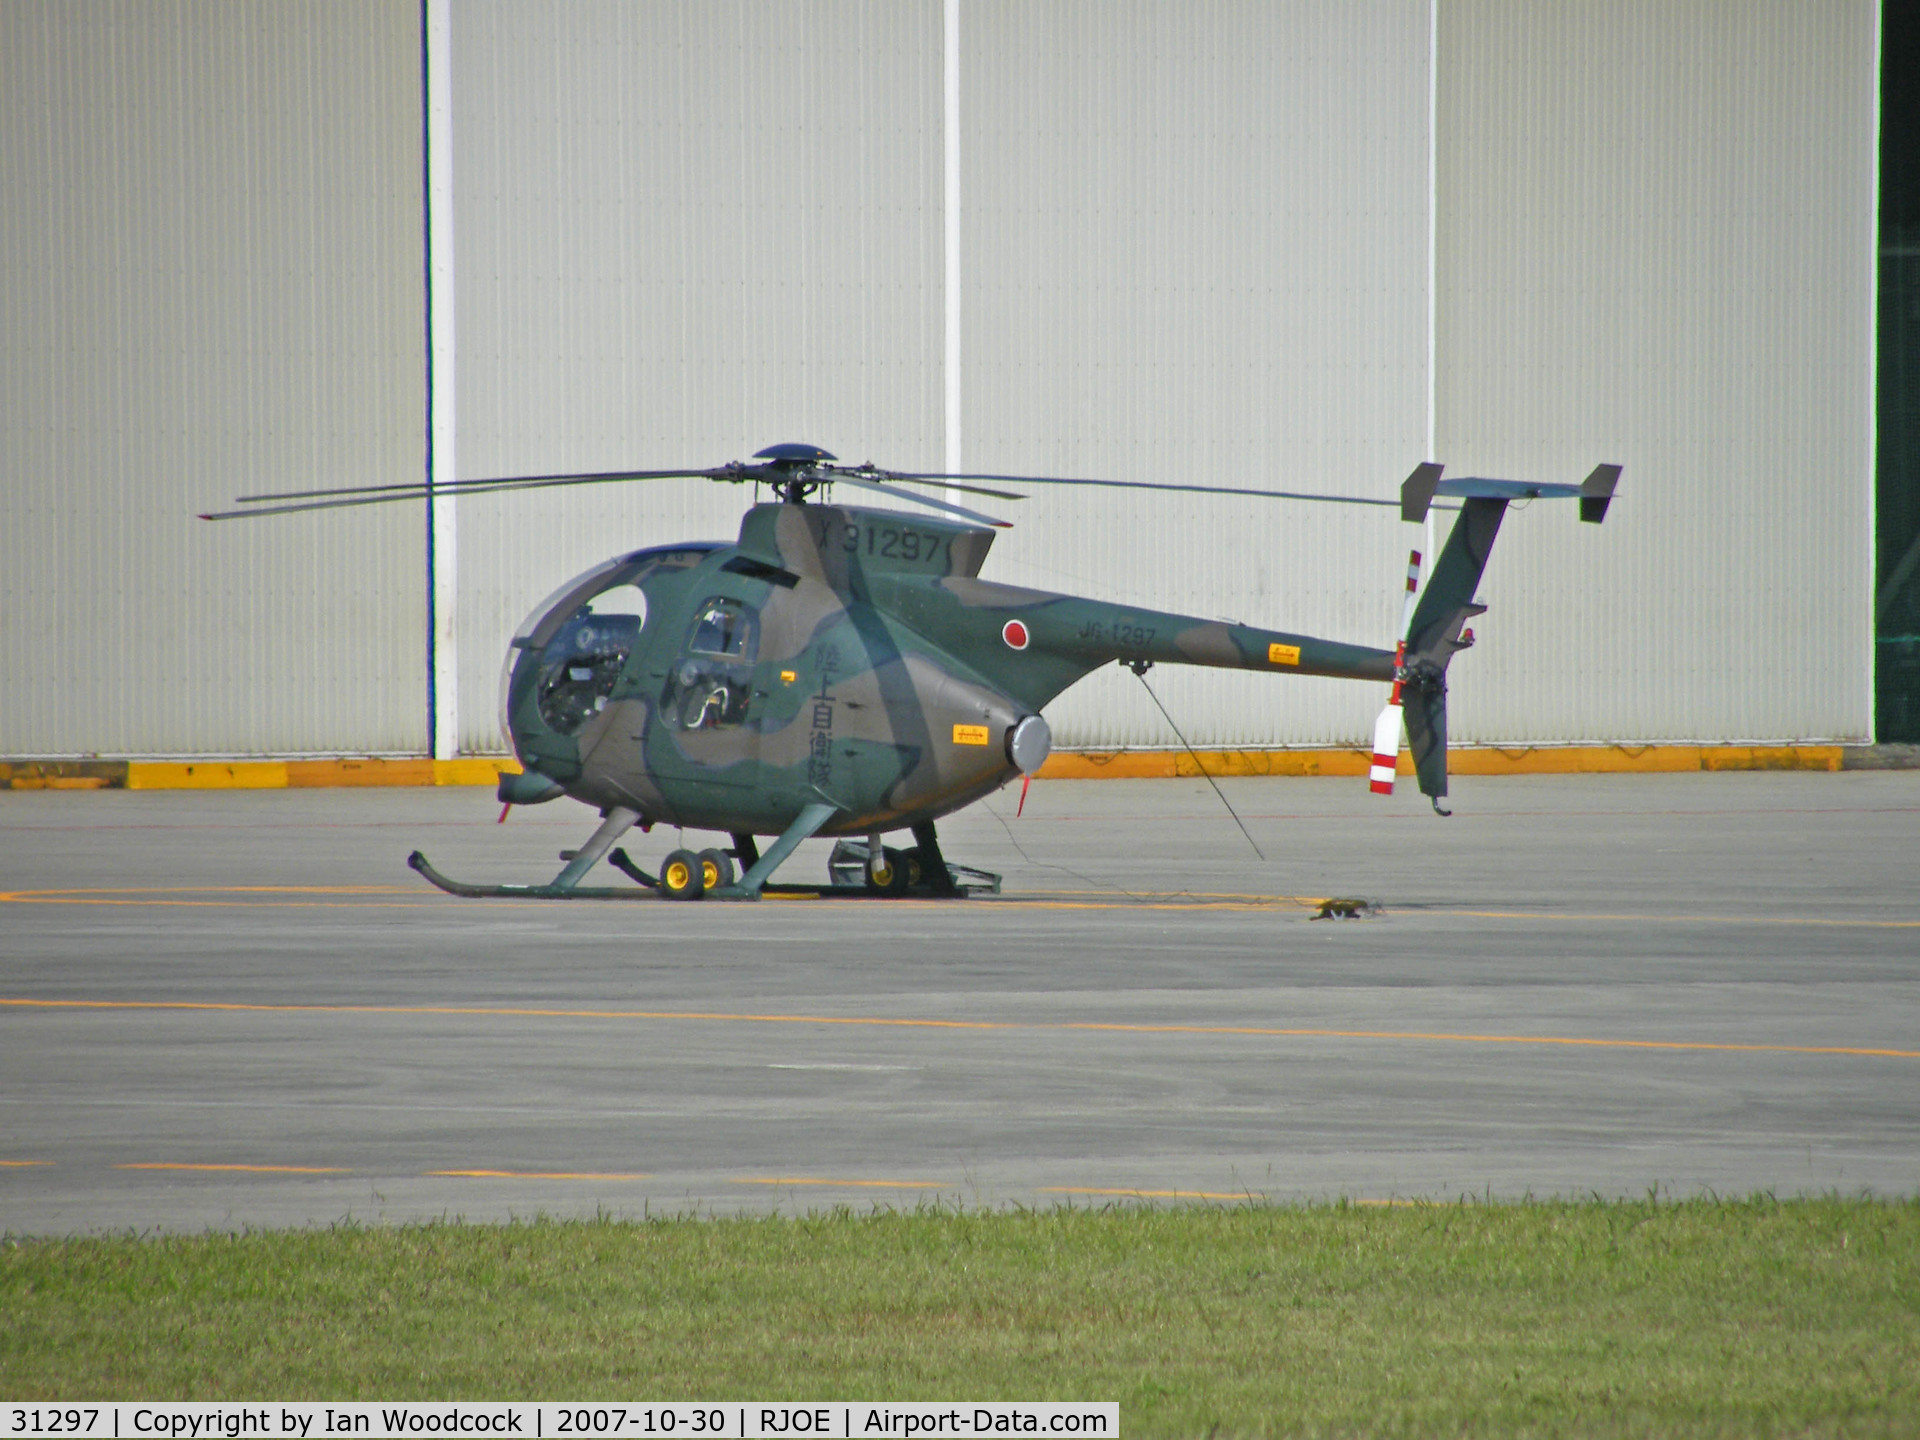 31297, Hughes (Kawasaki) OH-6D (369D) C/N 6503, OH-6D/Akeno-Mie